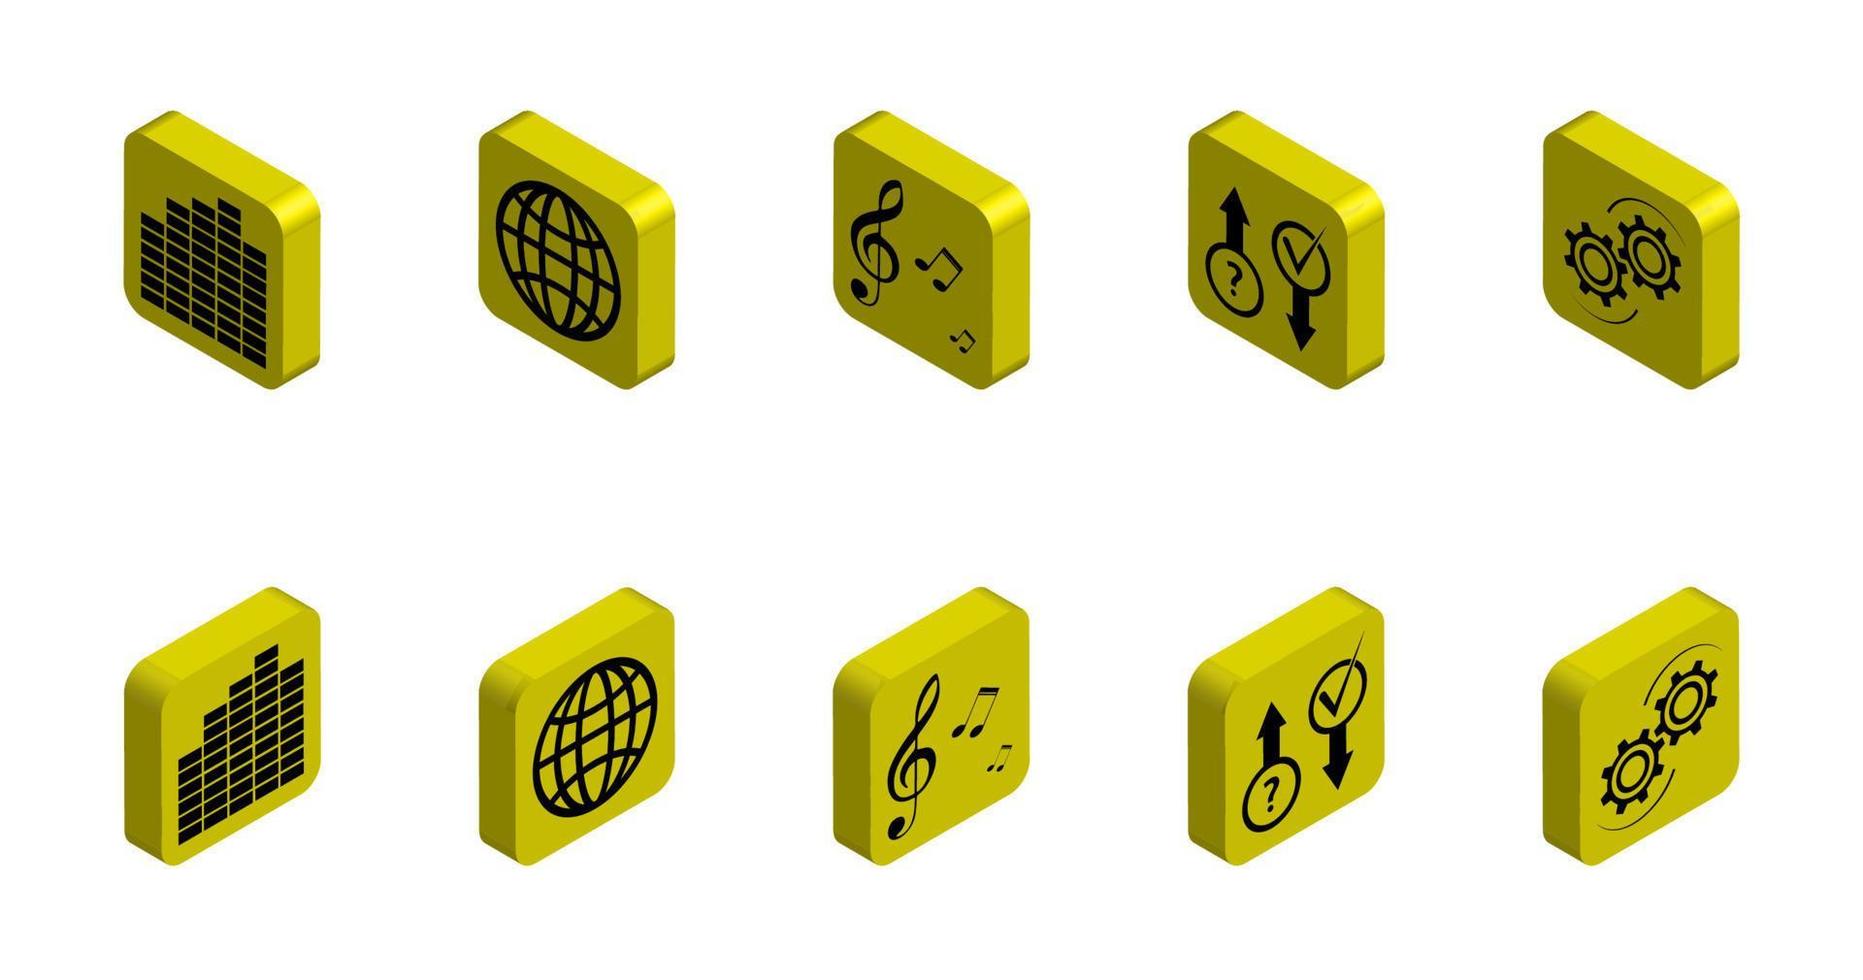 conjunto de ícones 3d funcionais sobre o tema de multimídia e configurações. vetor isolado no fundo branco